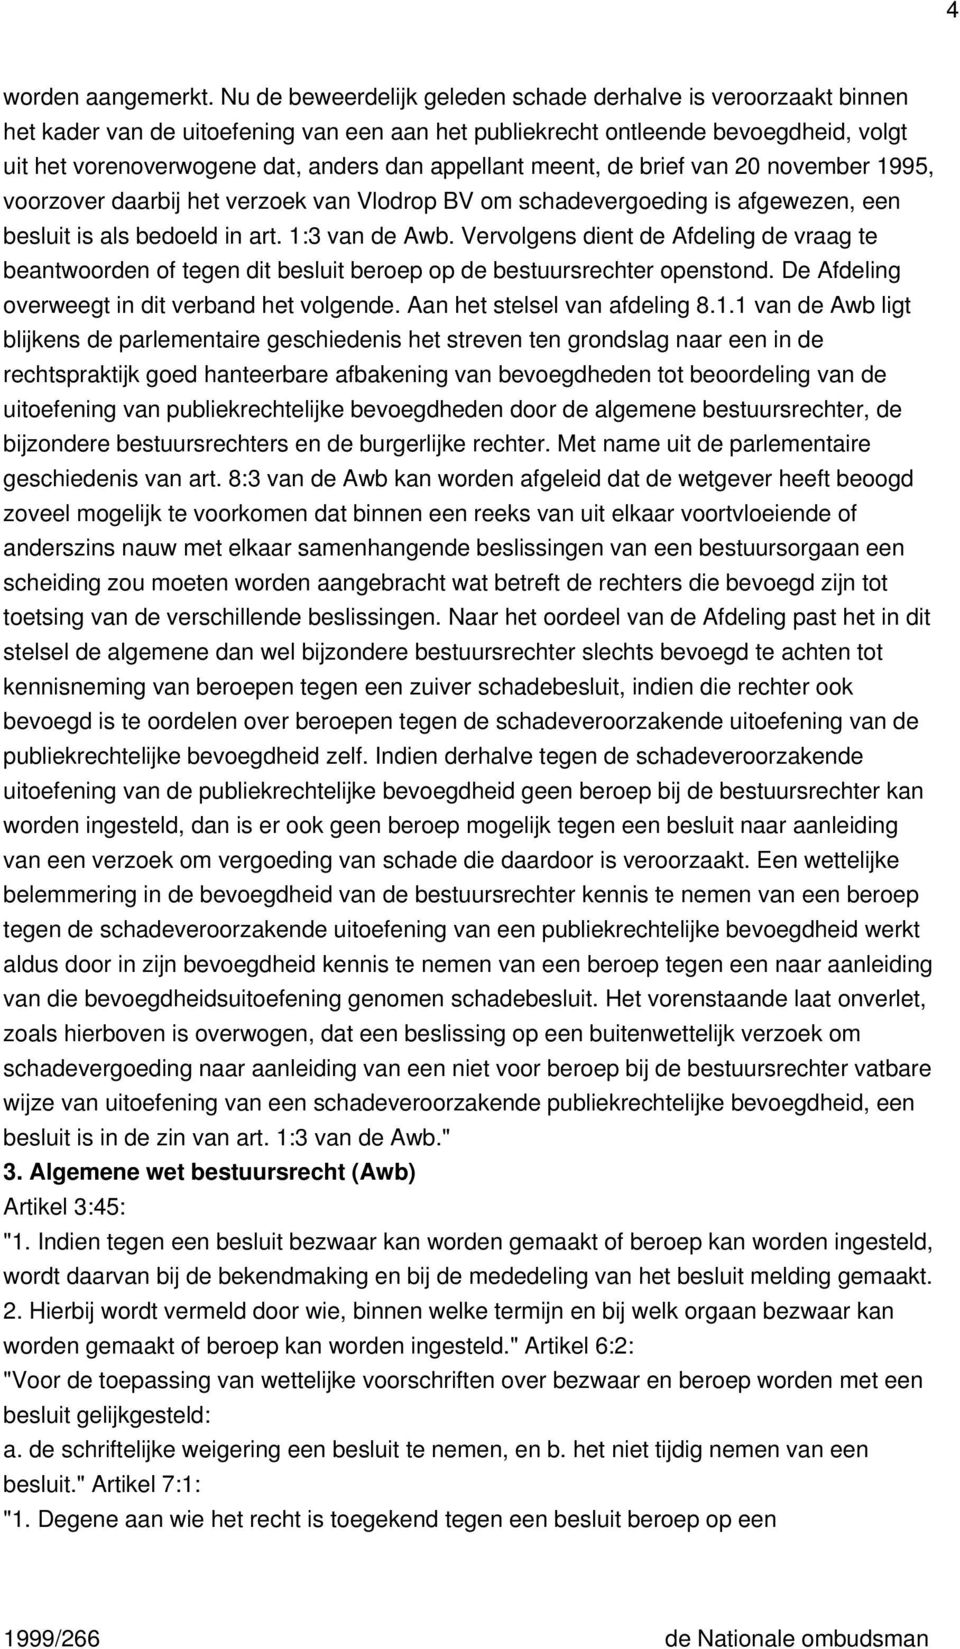 appellant meent, de brief van 20 november 1995, voorzover daarbij het verzoek van Vlodrop BV om schadevergoeding is afgewezen, een besluit is als bedoeld in art. 1:3 van de Awb.